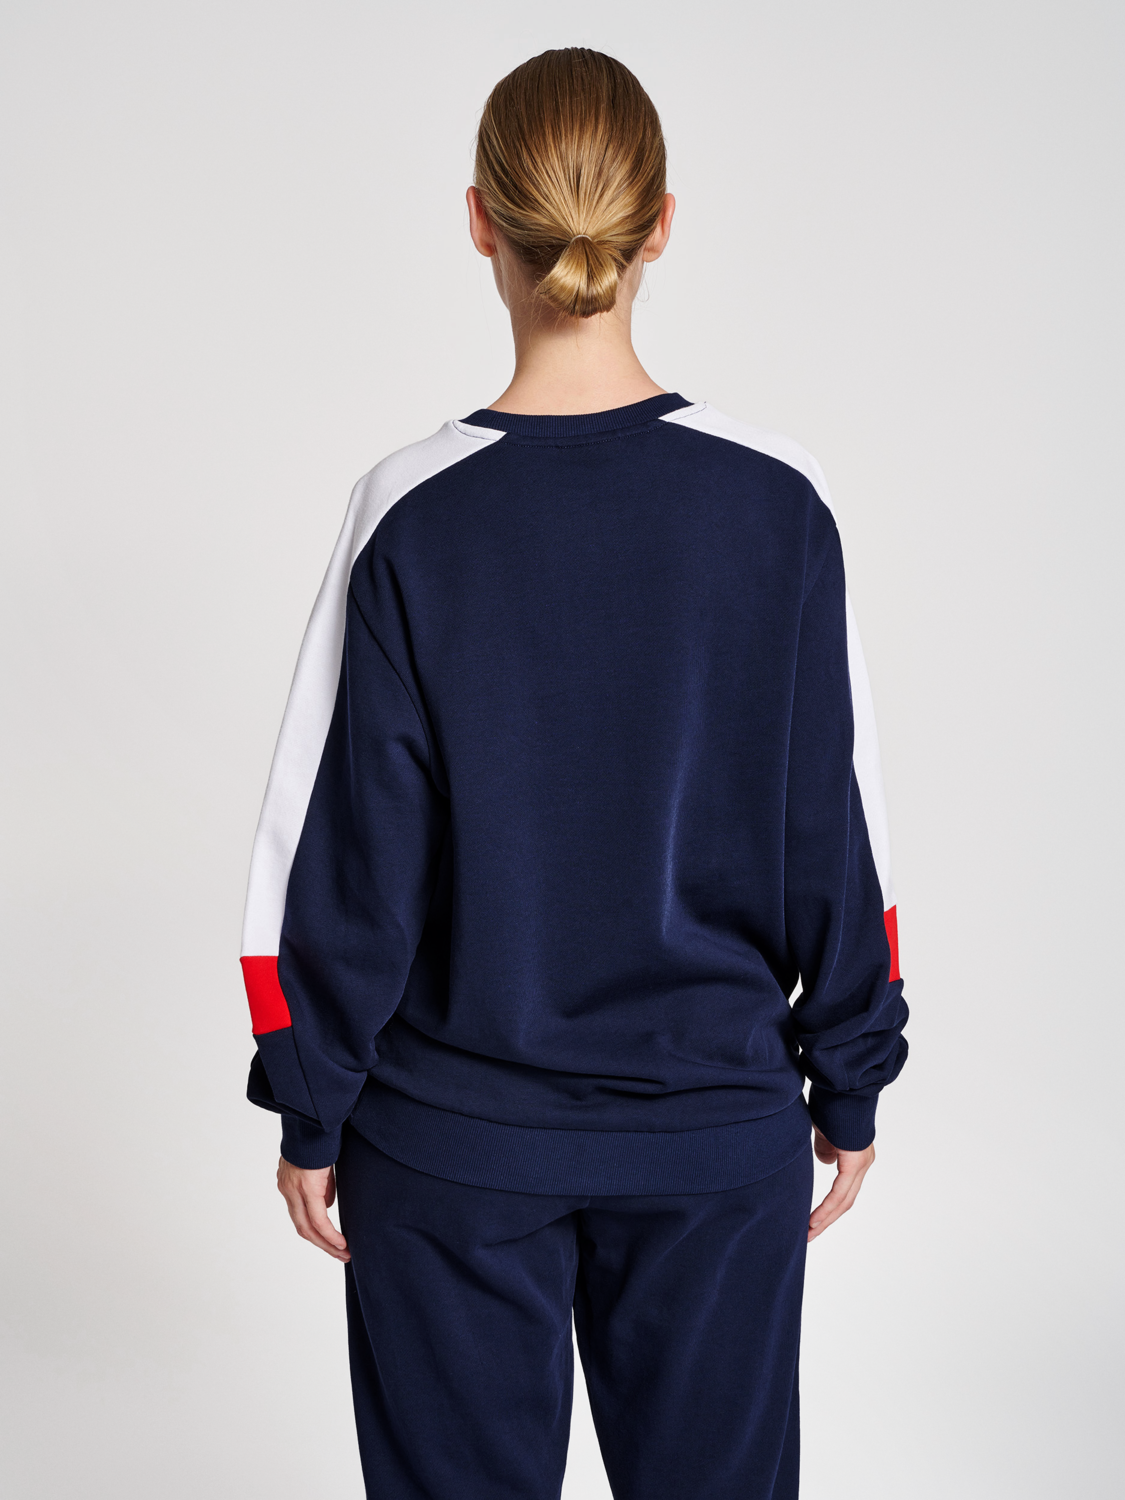 Blue Elephant-motif sweatshirt jogger set Farfetch Sport & Swimwear Sportswear Sports Hoodies 